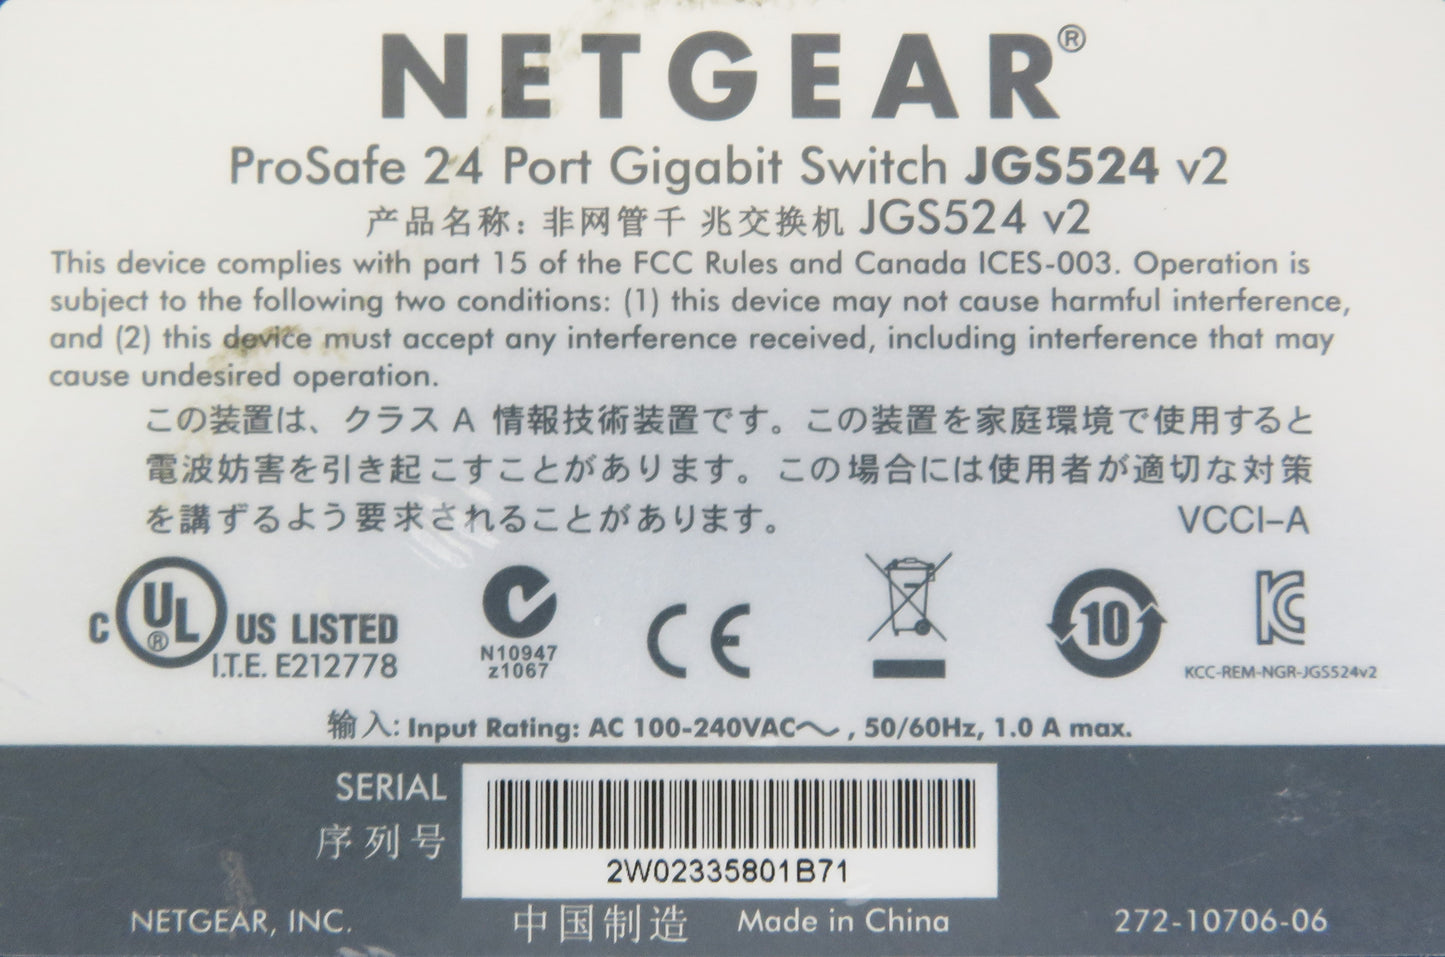 NETGEAR JGS524 v2, ProSafe 24 Port Gigabit Ethernet Network Switch